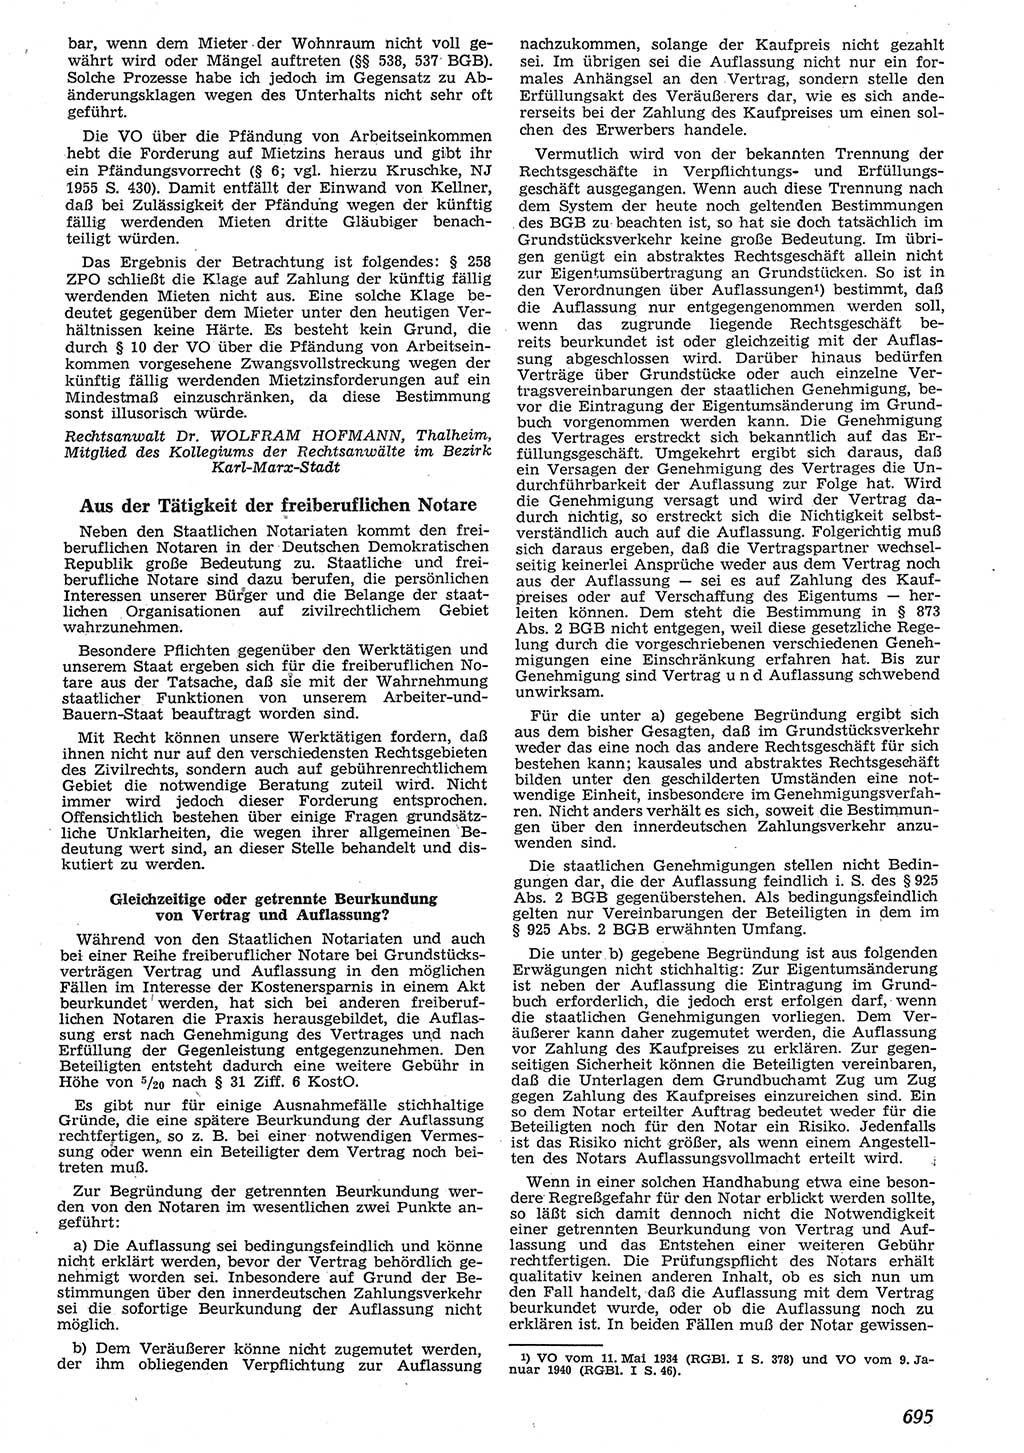 Neue Justiz (NJ), Zeitschrift für Recht und Rechtswissenschaft [Deutsche Demokratische Republik (DDR)], 10. Jahrgang 1956, Seite 695 (NJ DDR 1956, S. 695)